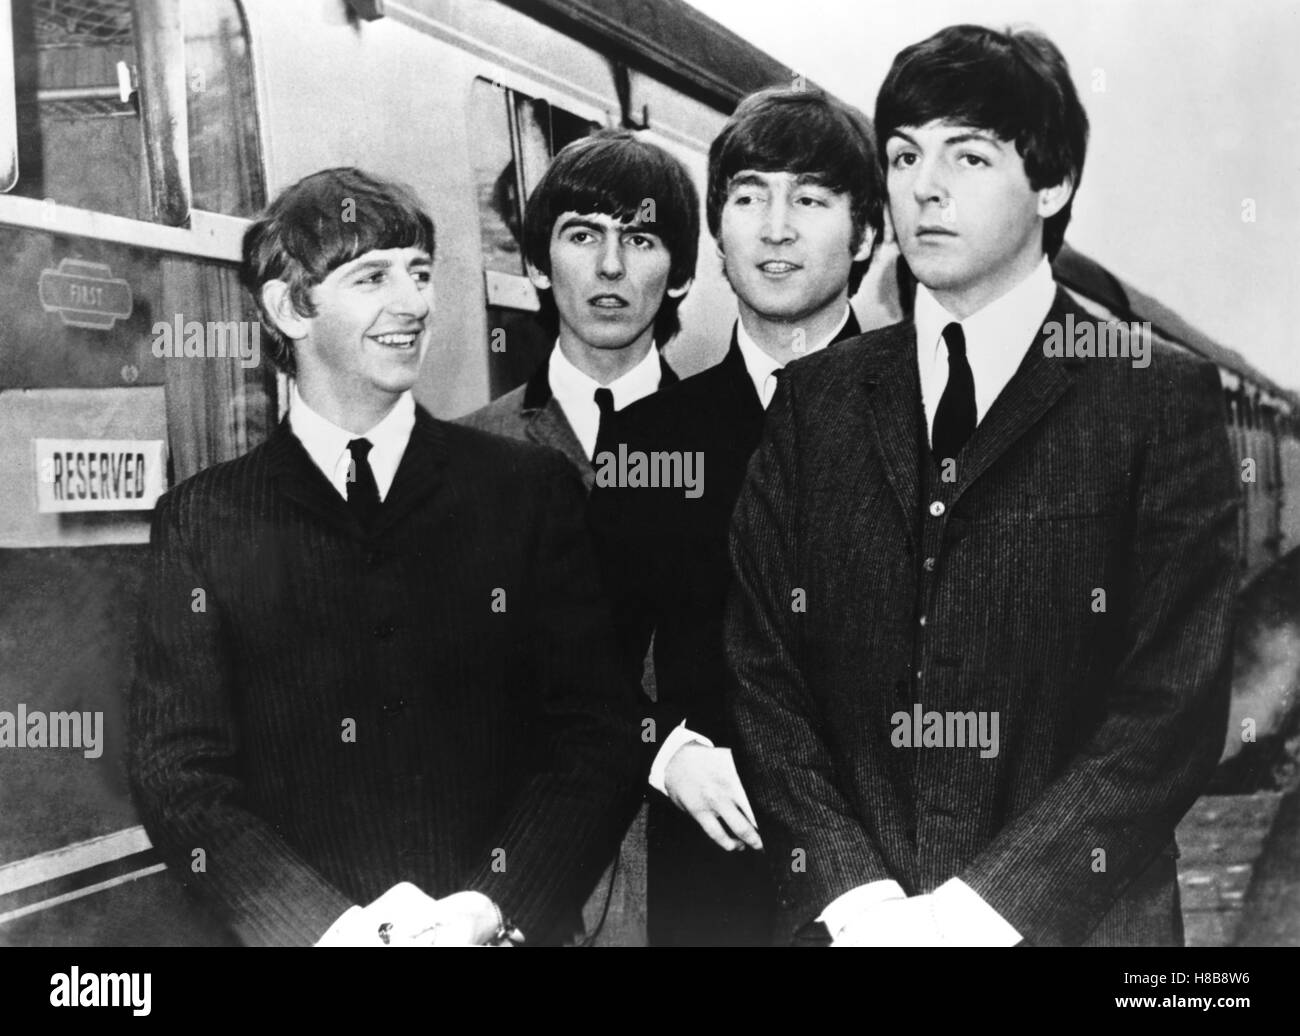 A Hard Day's Night, (A HARD DAY'S NIGHT) GB 1964  s/w, Regie: Richard Lester, RINGO STARR, GEORGE HARRISON, JOHN LENNON, PAUL McCARTNEY, Key: Beatles Stock Photo